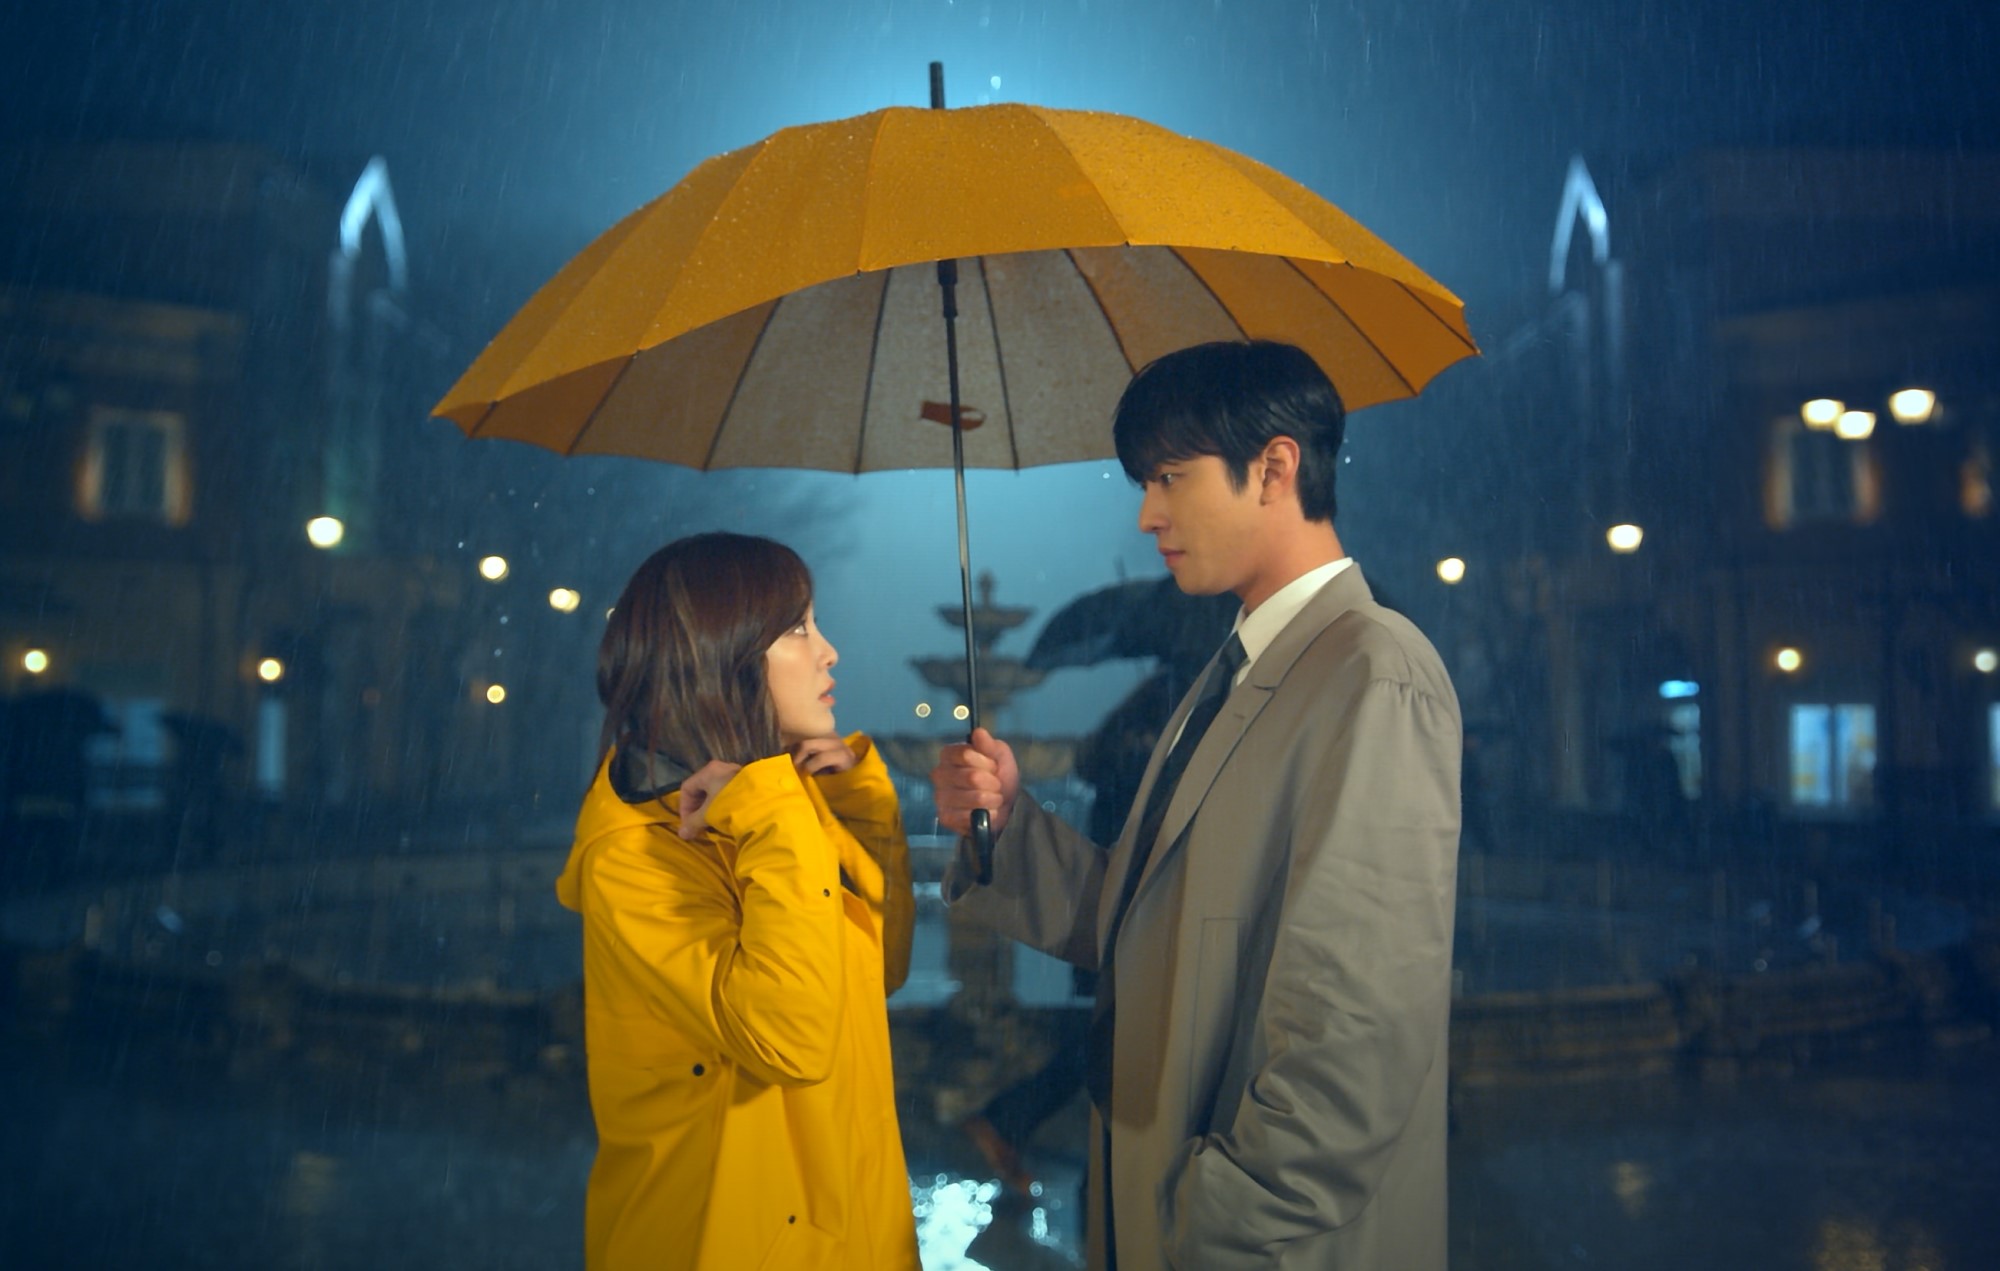 Imagem em que os dois protagonistas de pretendente surpresa estão na chuva, enquanto o protagonista homem segura um guarda chuva